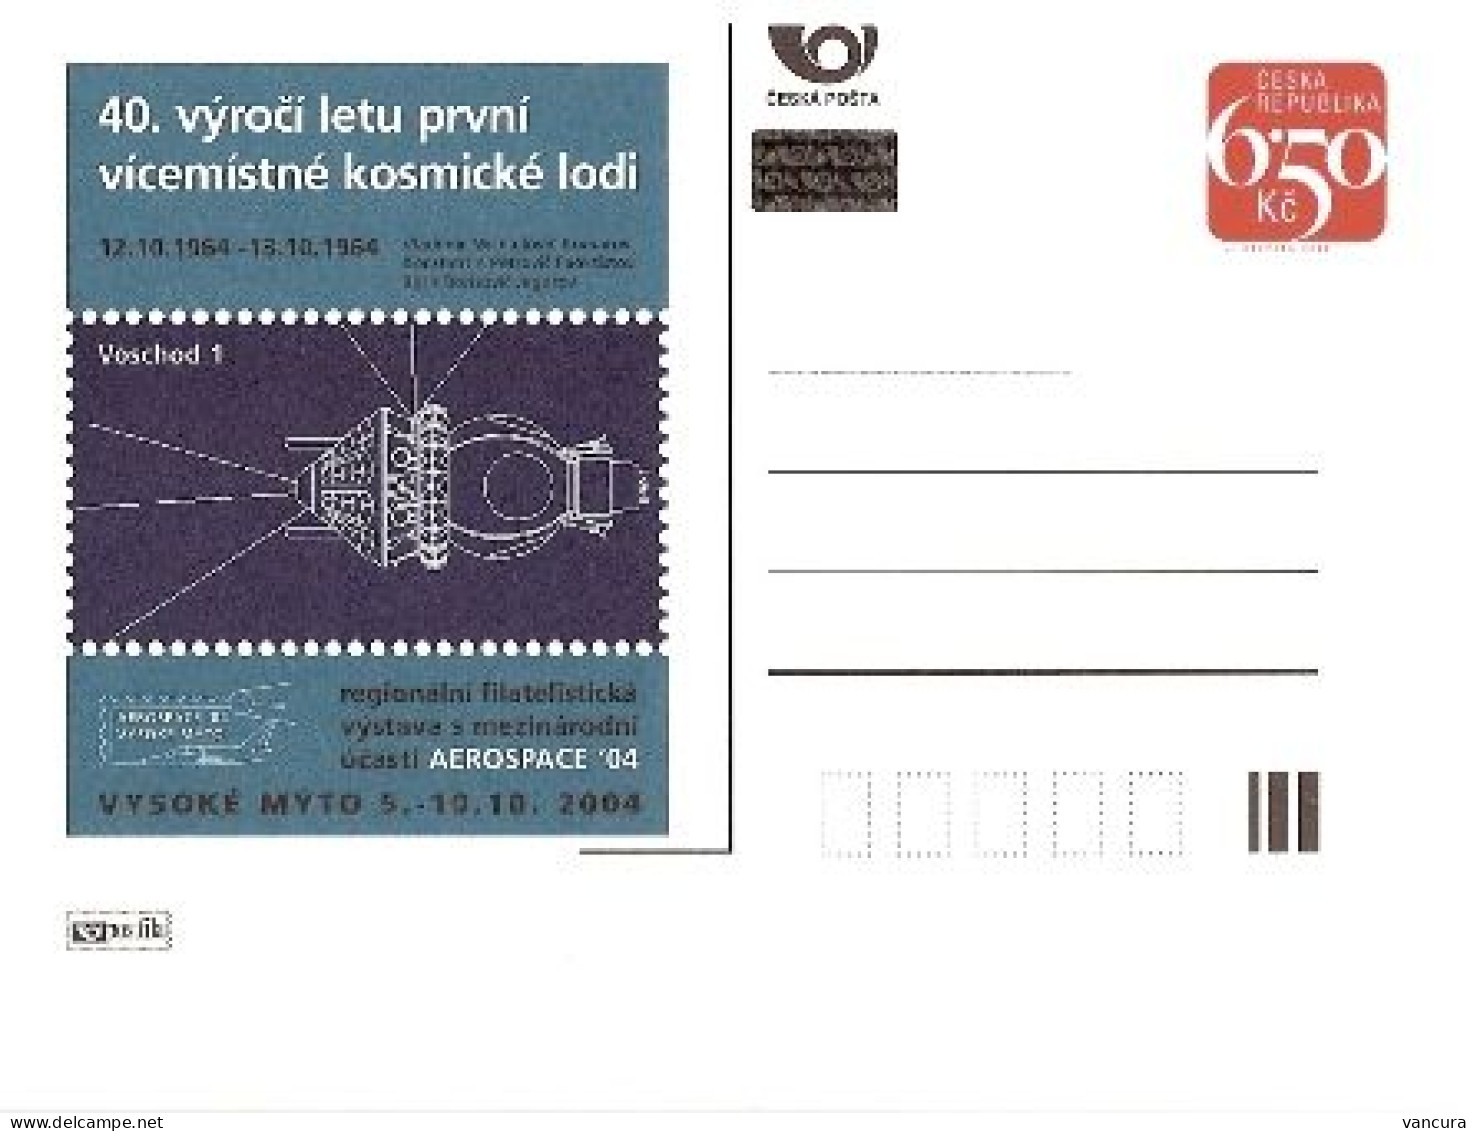 CDV A 107 Czech Republic - Aerospace Exhibition 2004 - Cartes Postales